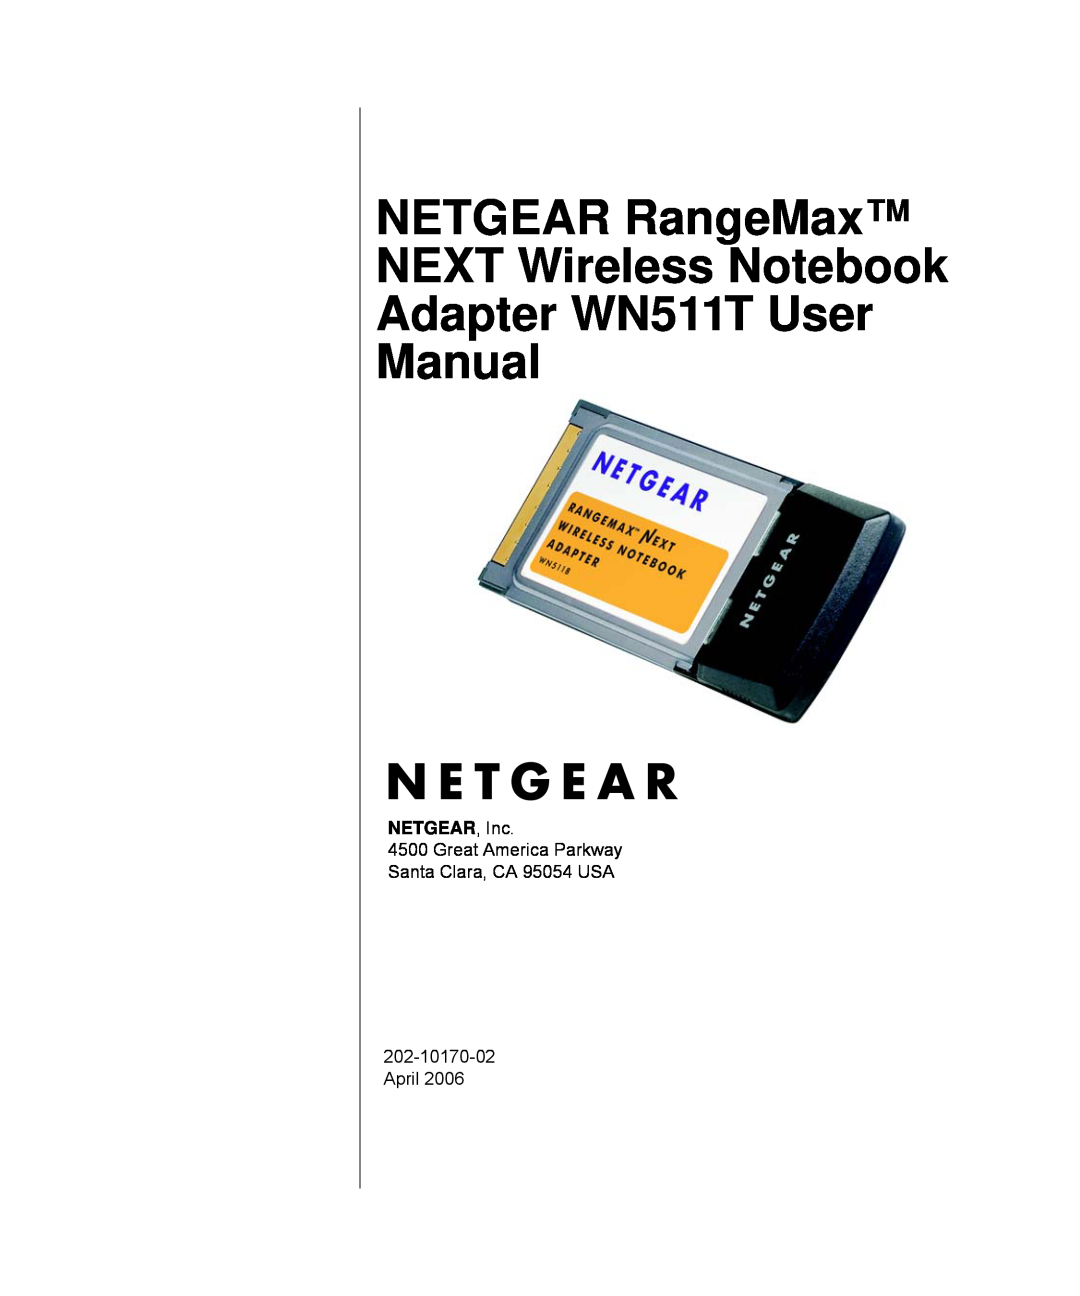 NETGEAR user manual NETGEAR RangeMax NEXT Wireless Notebook Adapter WN511T User Manual, NETGEAR, Inc 